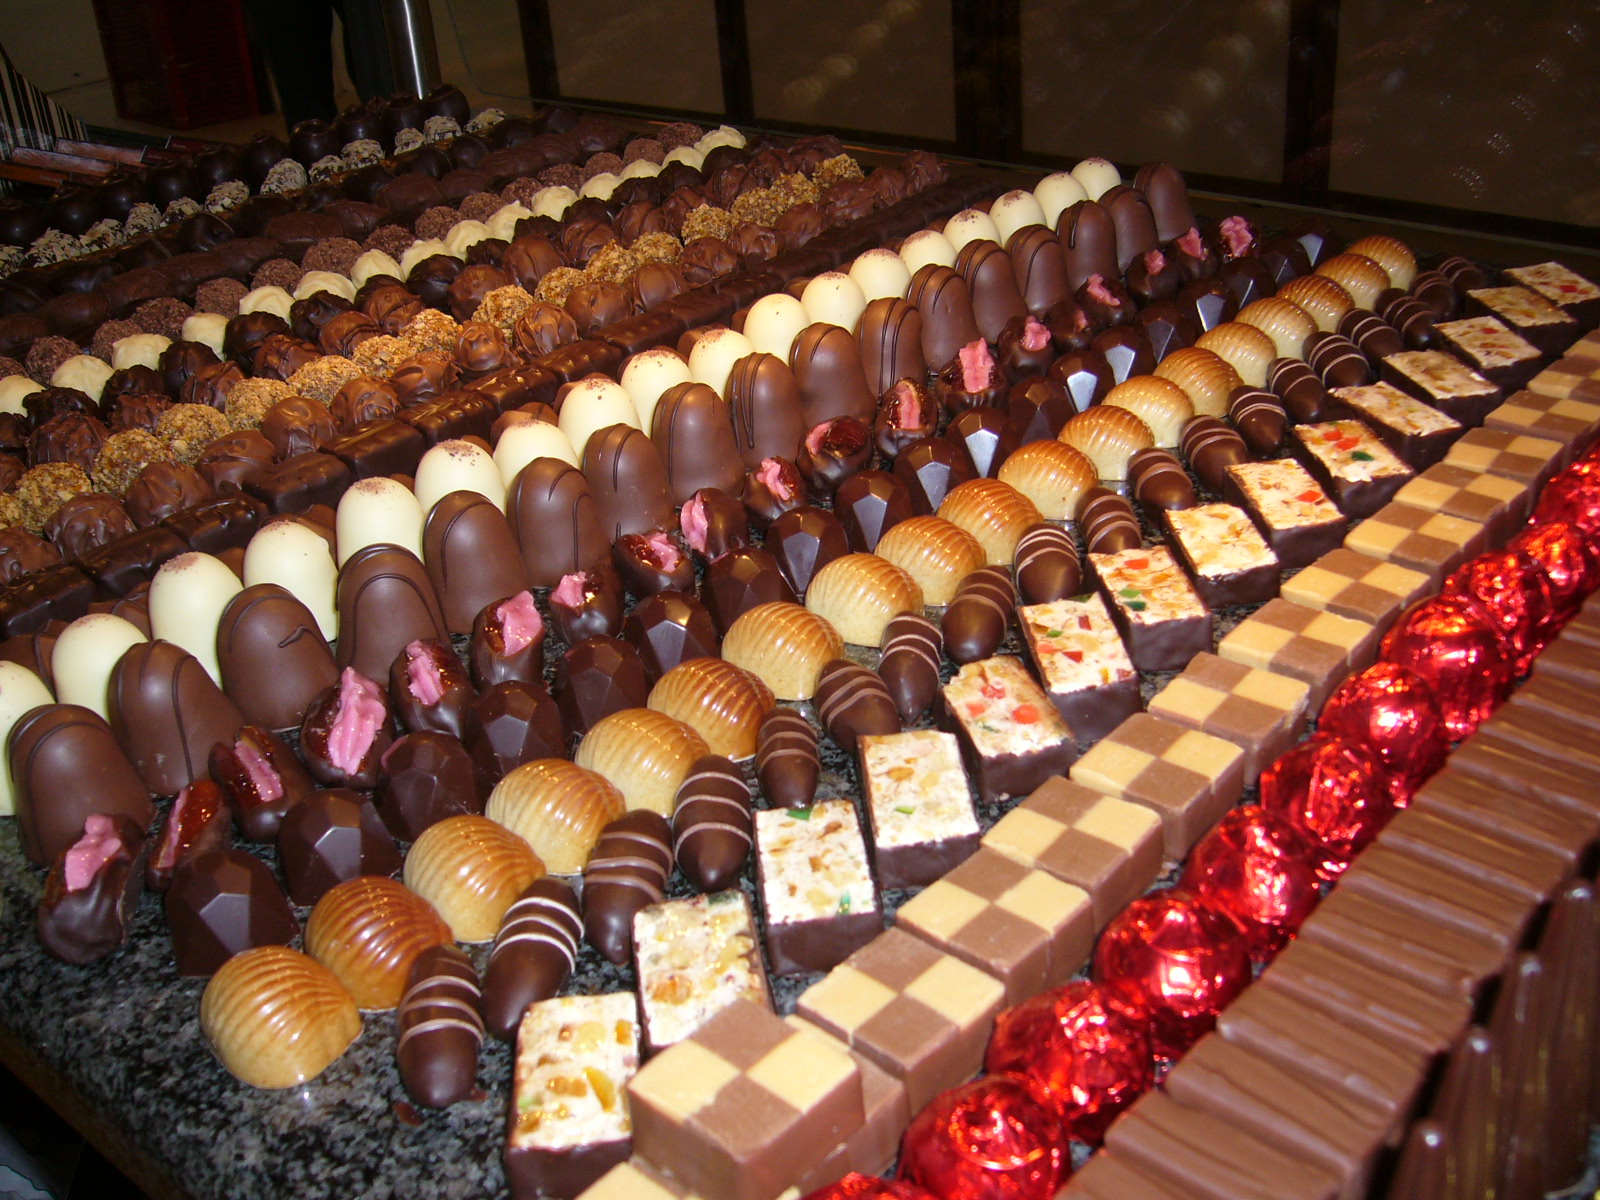 csokolade-muzeumi-praline-tura-original-53117.jpg